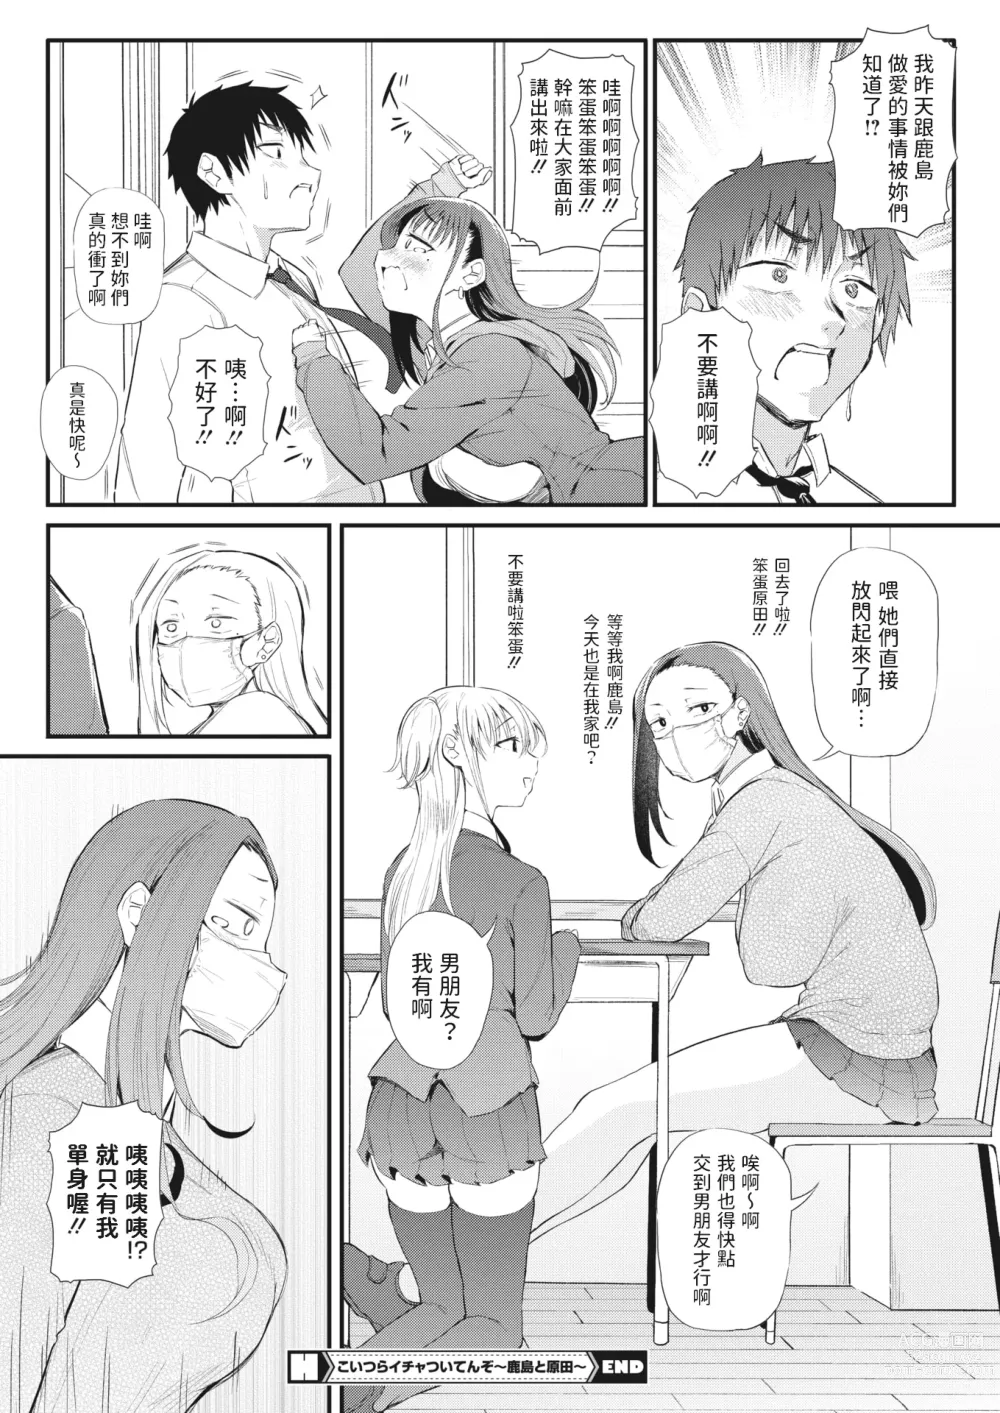 Page 24 of manga Koitsura Ichatsuiten zo ~Kashima to Harada~